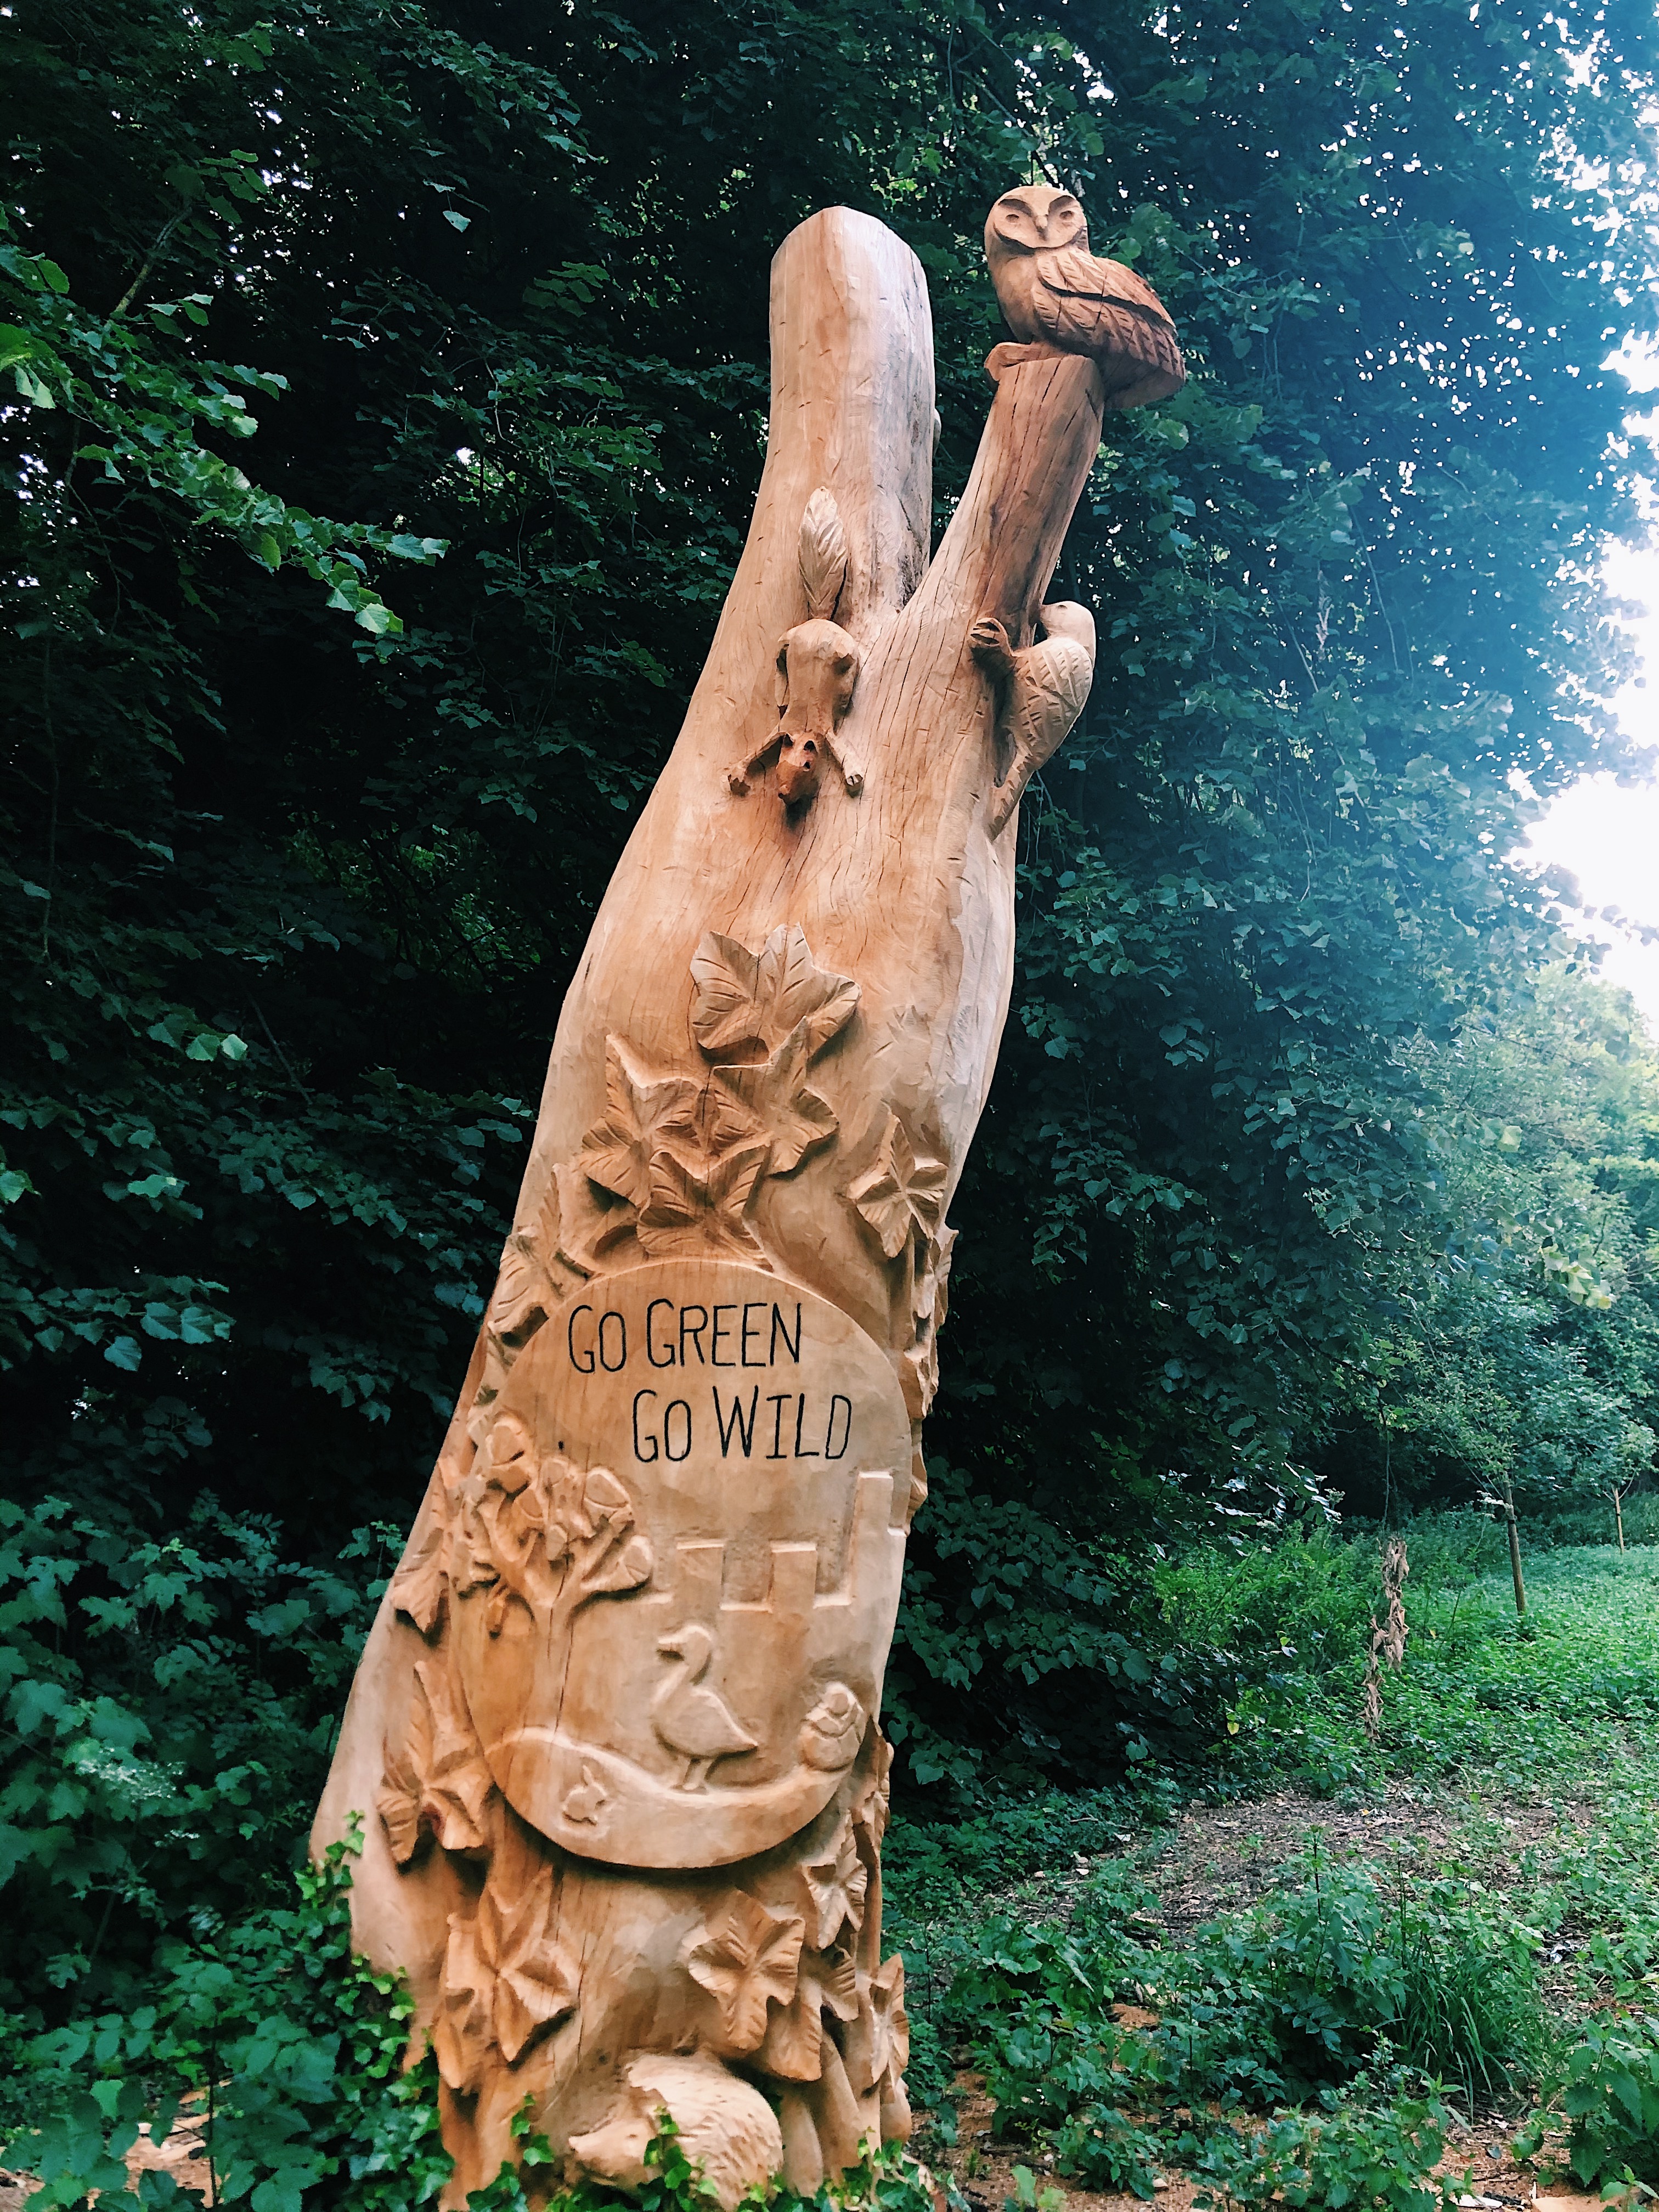 Carved wooden sculpture